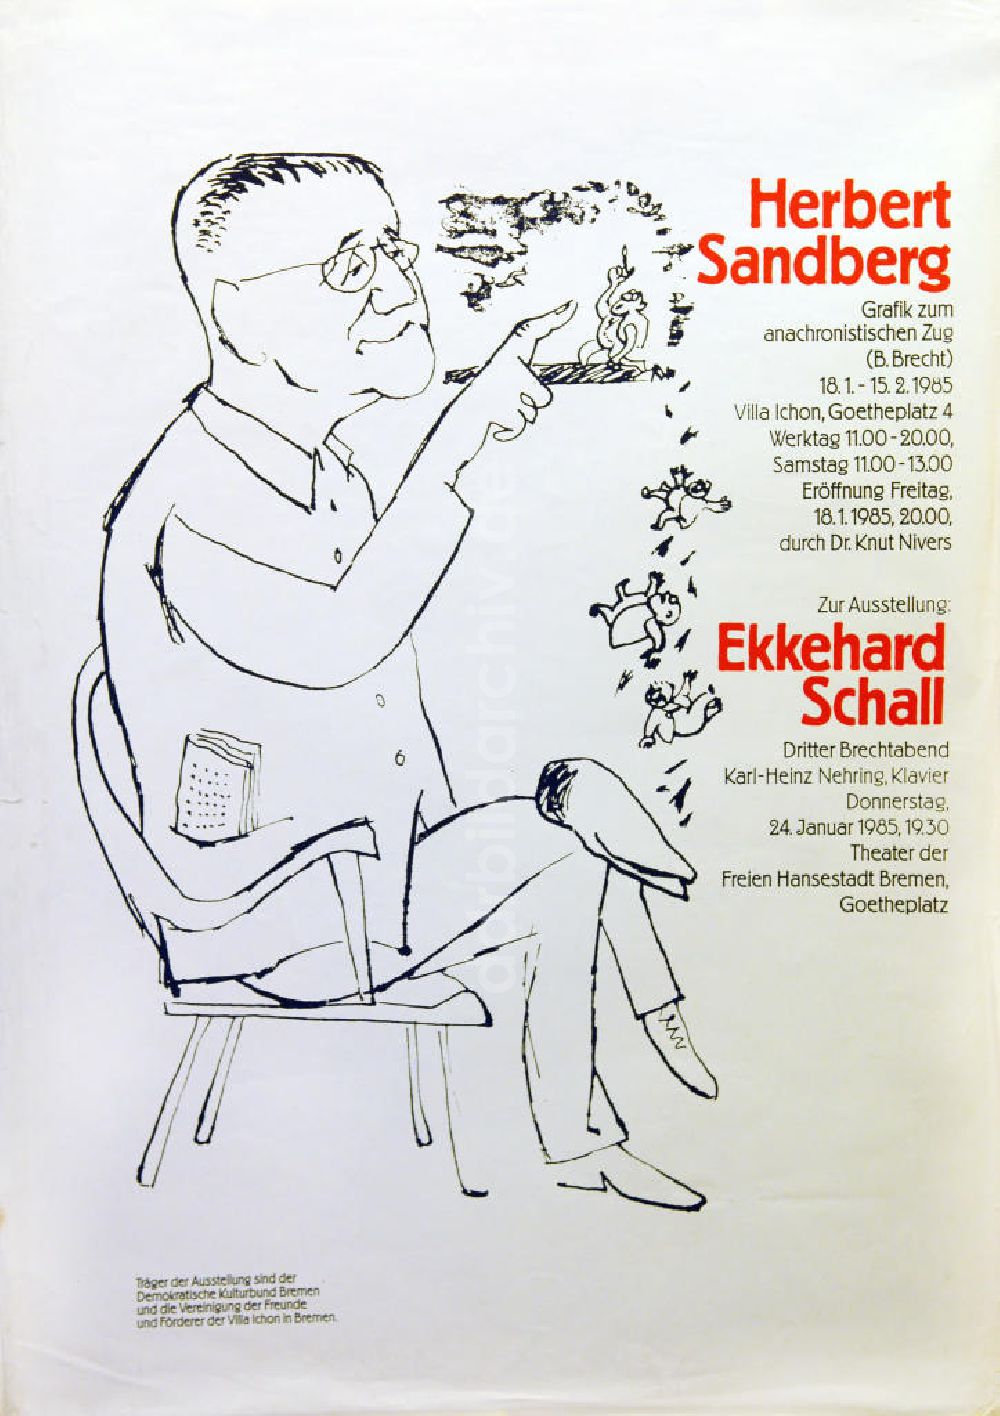 DDR-Fotoarchiv: Berlin - Plakat von der Ausstellung Herbert Sandberg, Grafik zum anachronistischen Zug (B. Brecht) aus dem Jahr 1985